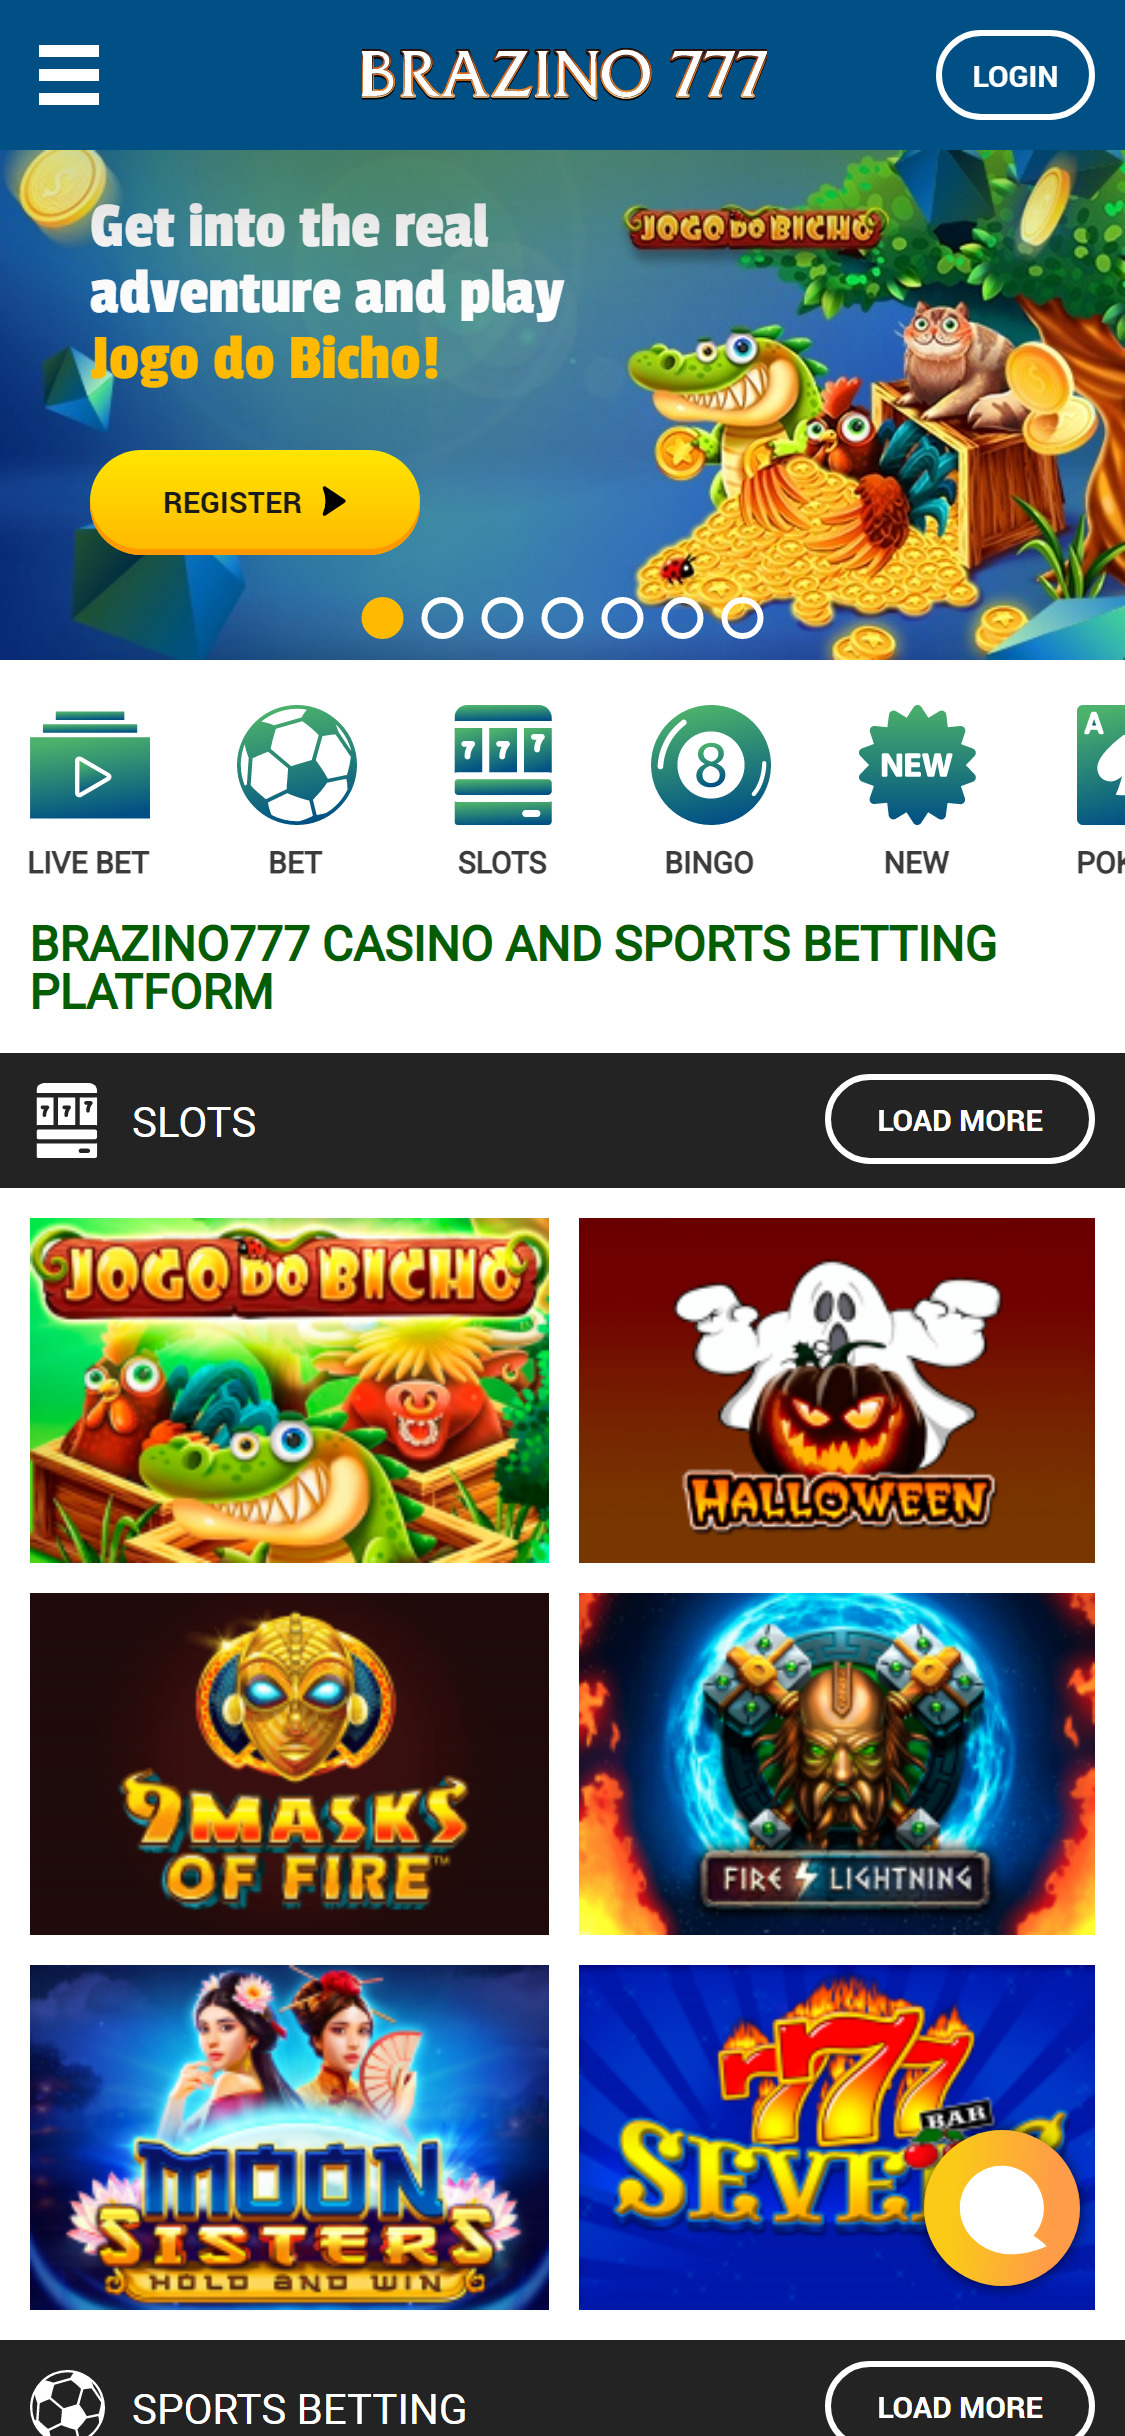 Brazino777 Casino Mobile Review